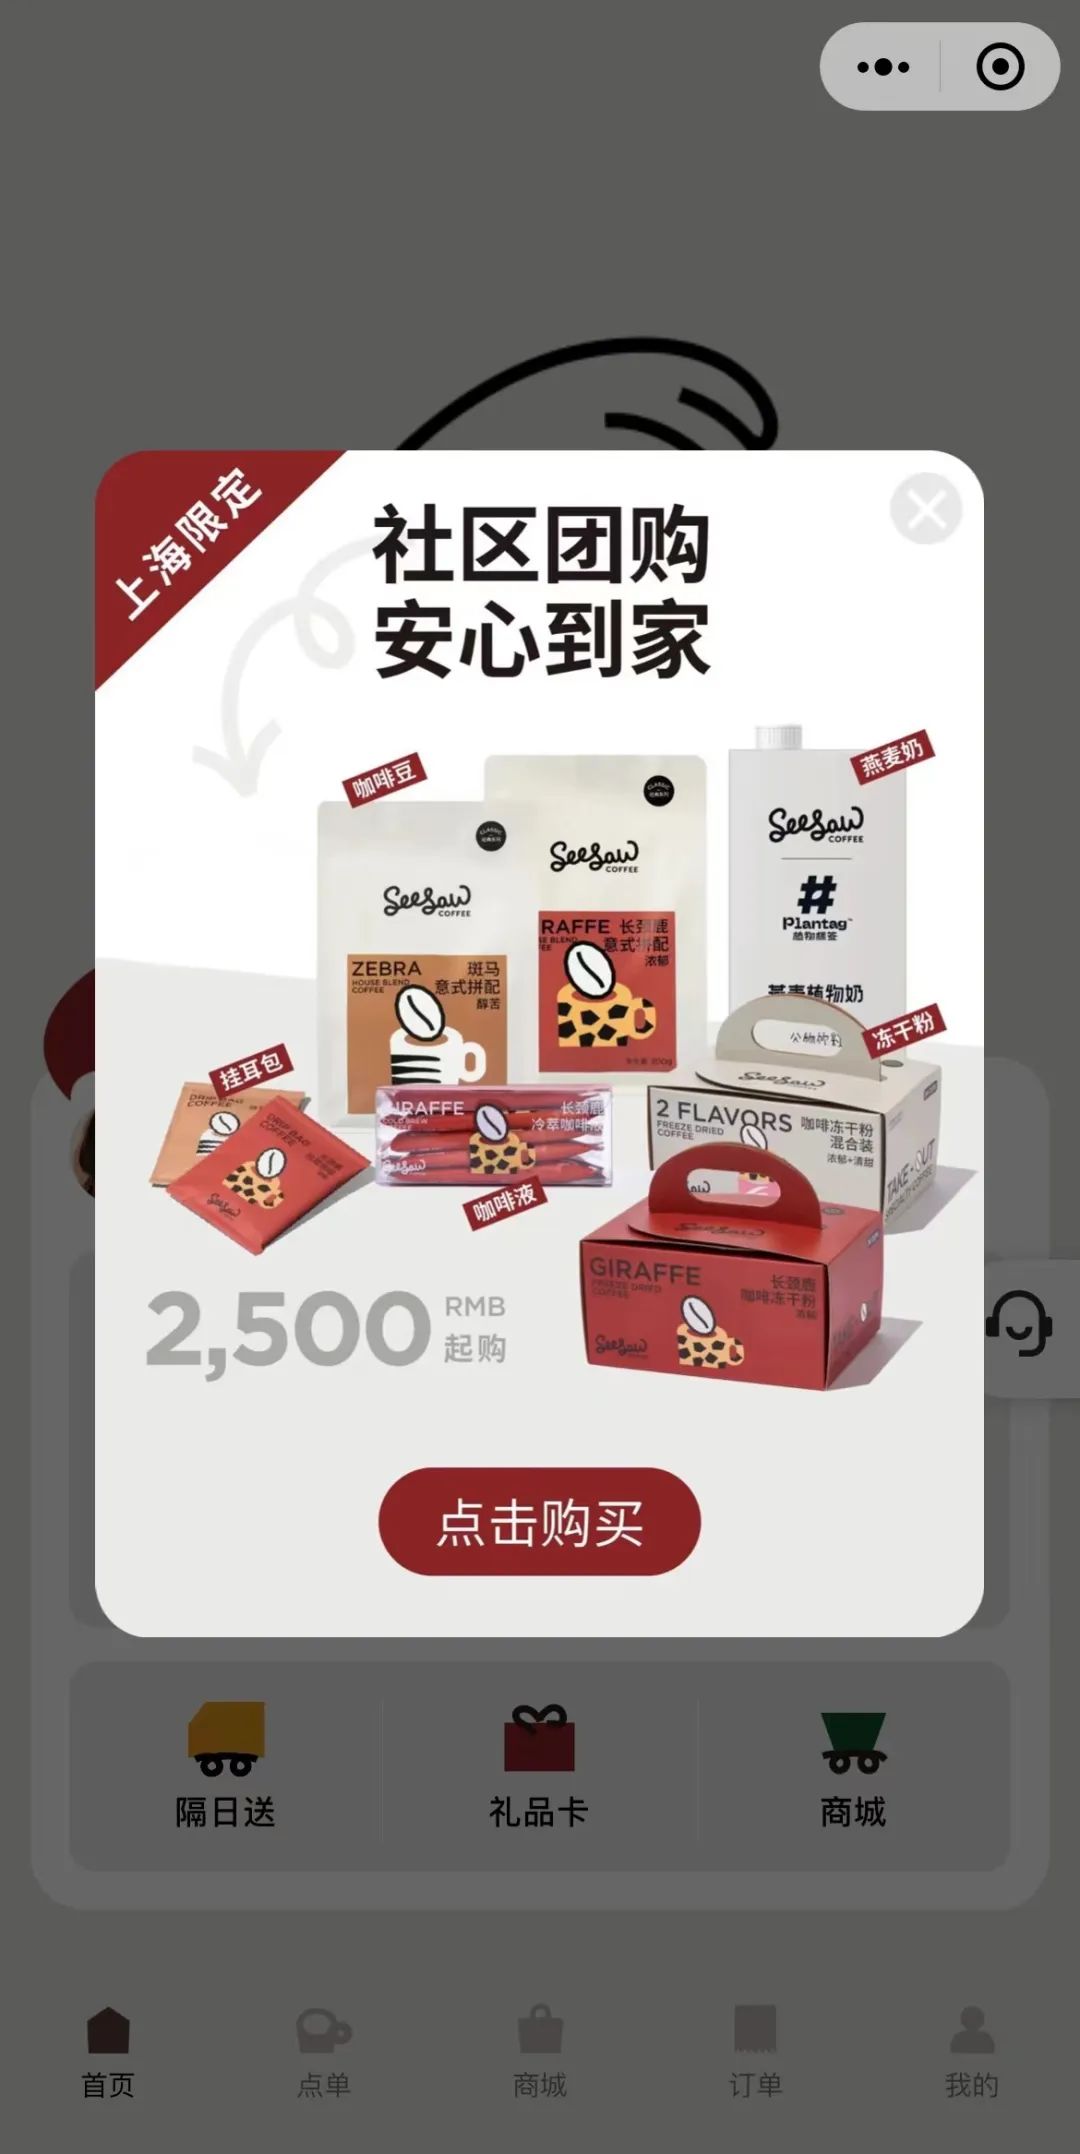 一号站平台“没咖啡不能活，真不是矫情！”2500元起购，“开团”就爆单，上海人为啥这么爱咖啡？